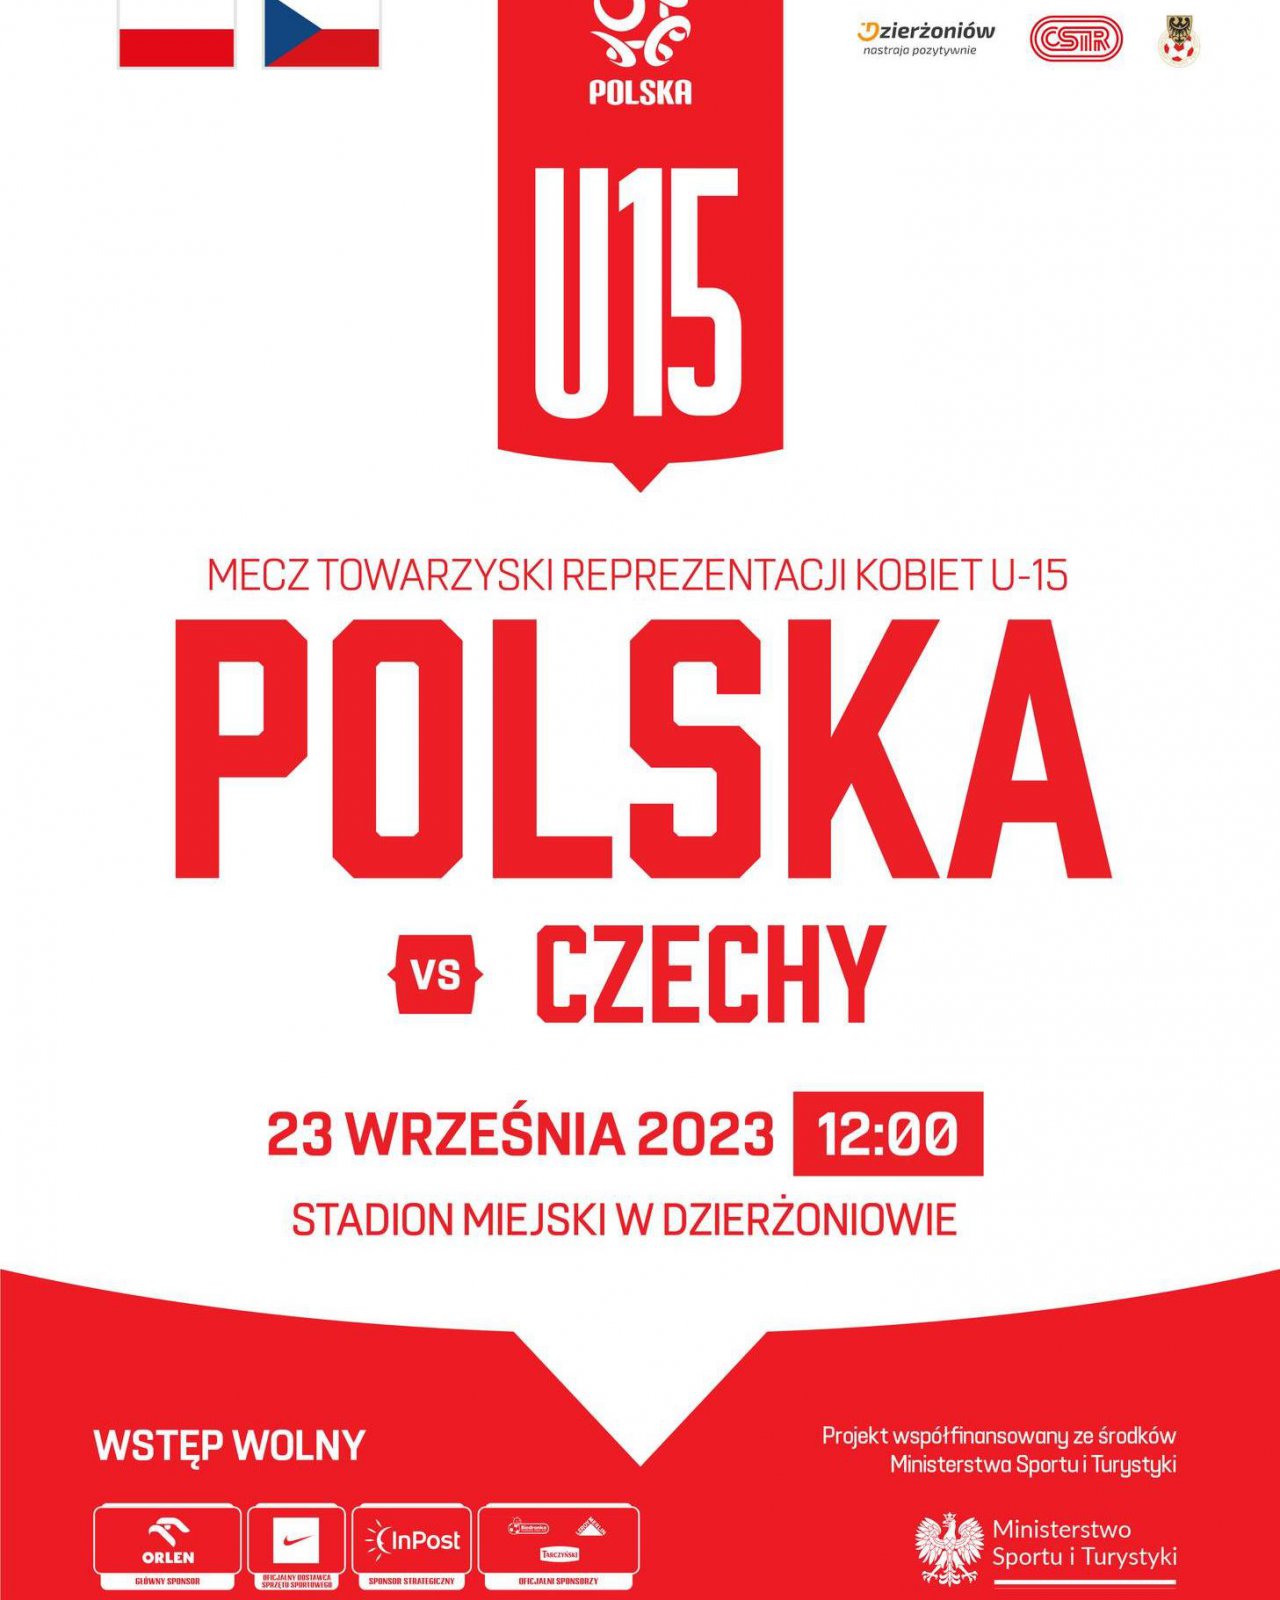 Plakat reklamujacy wydarzenie w biało-czerwonych barwach i informacje podane w tekście